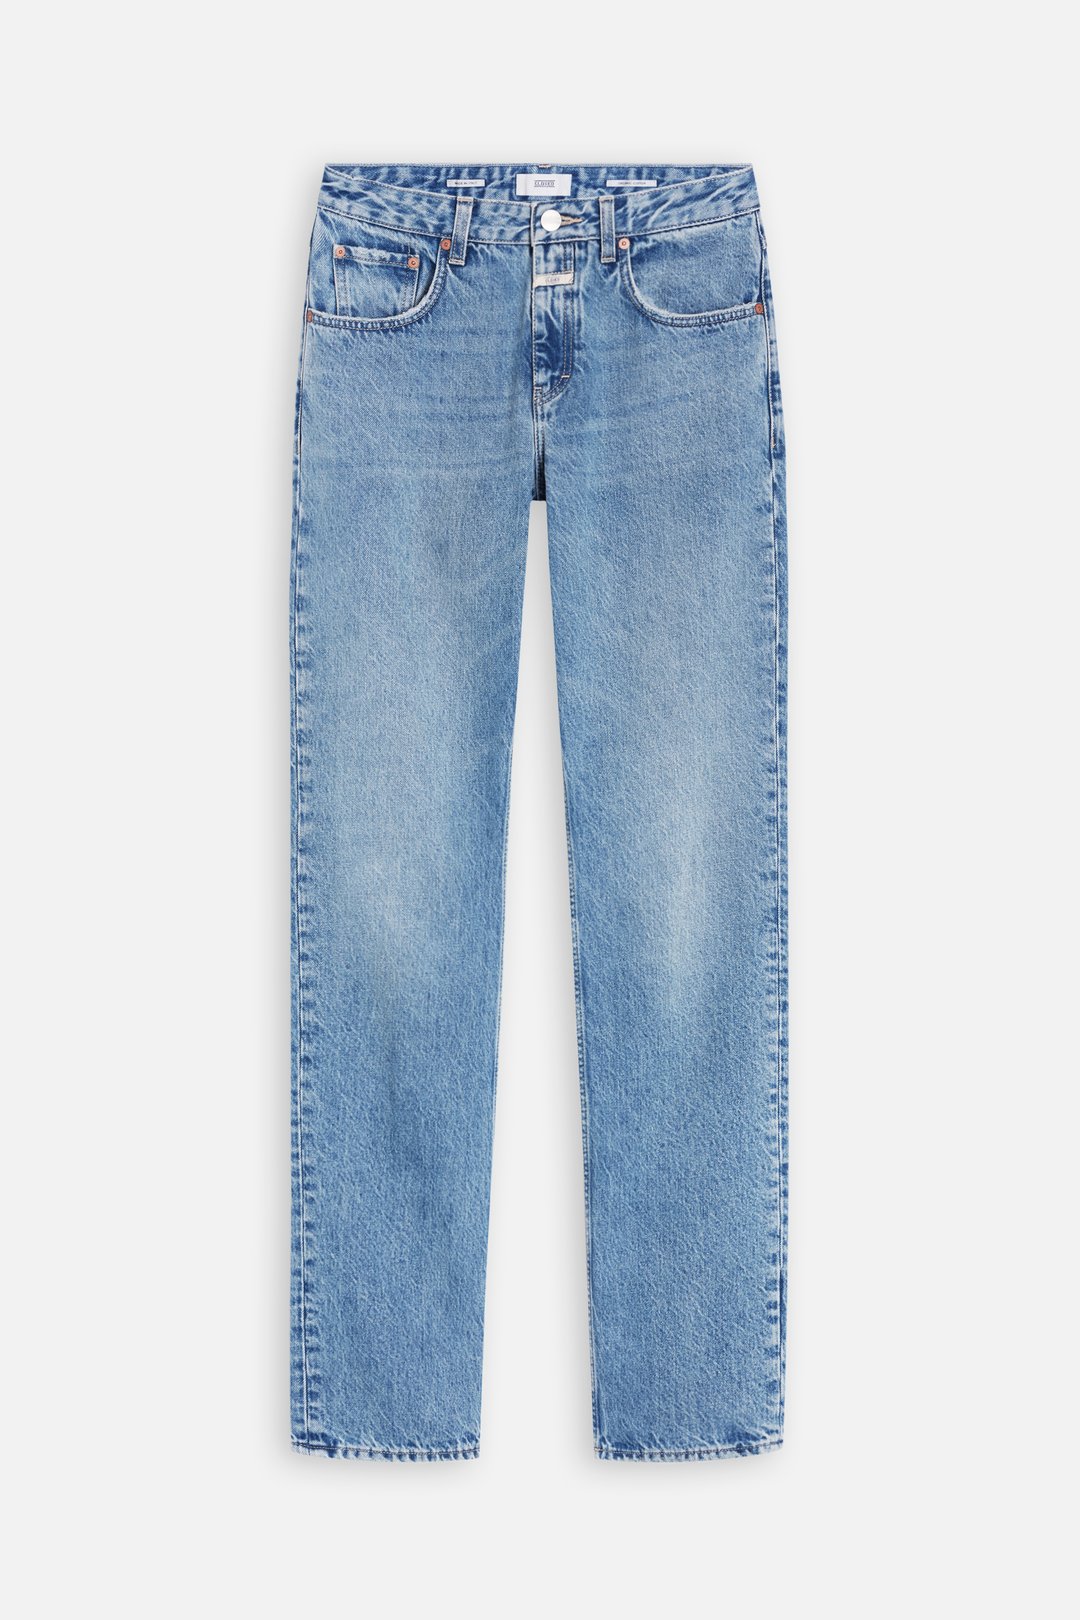 discount 88% Zara shorts jeans White 44                  EU MEN FASHION Jeans Basic 